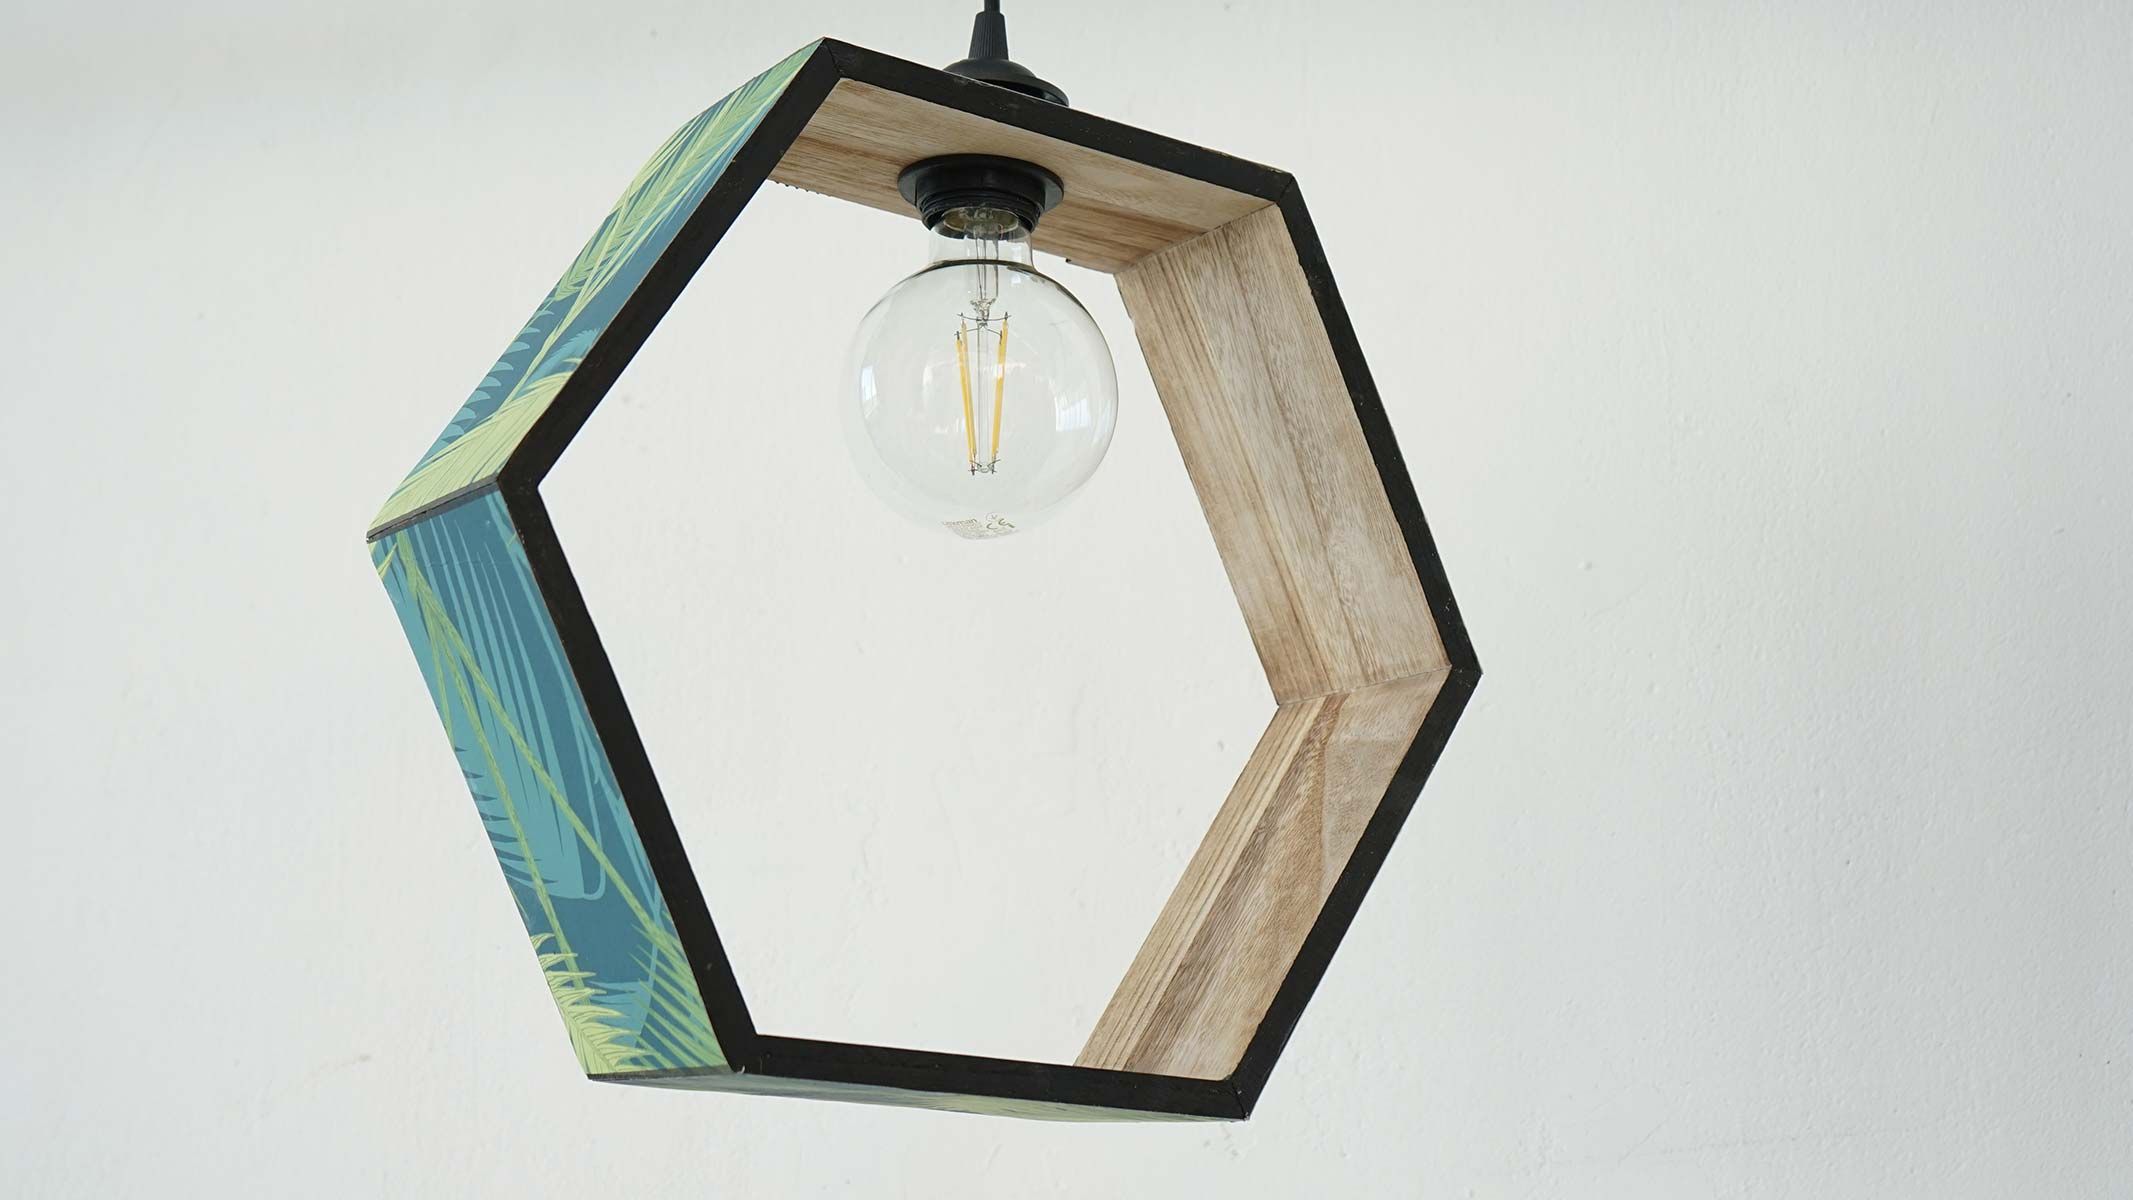 borracho Acostumbrados a insertar Una bonita lámpara de techo DIY hexagonal